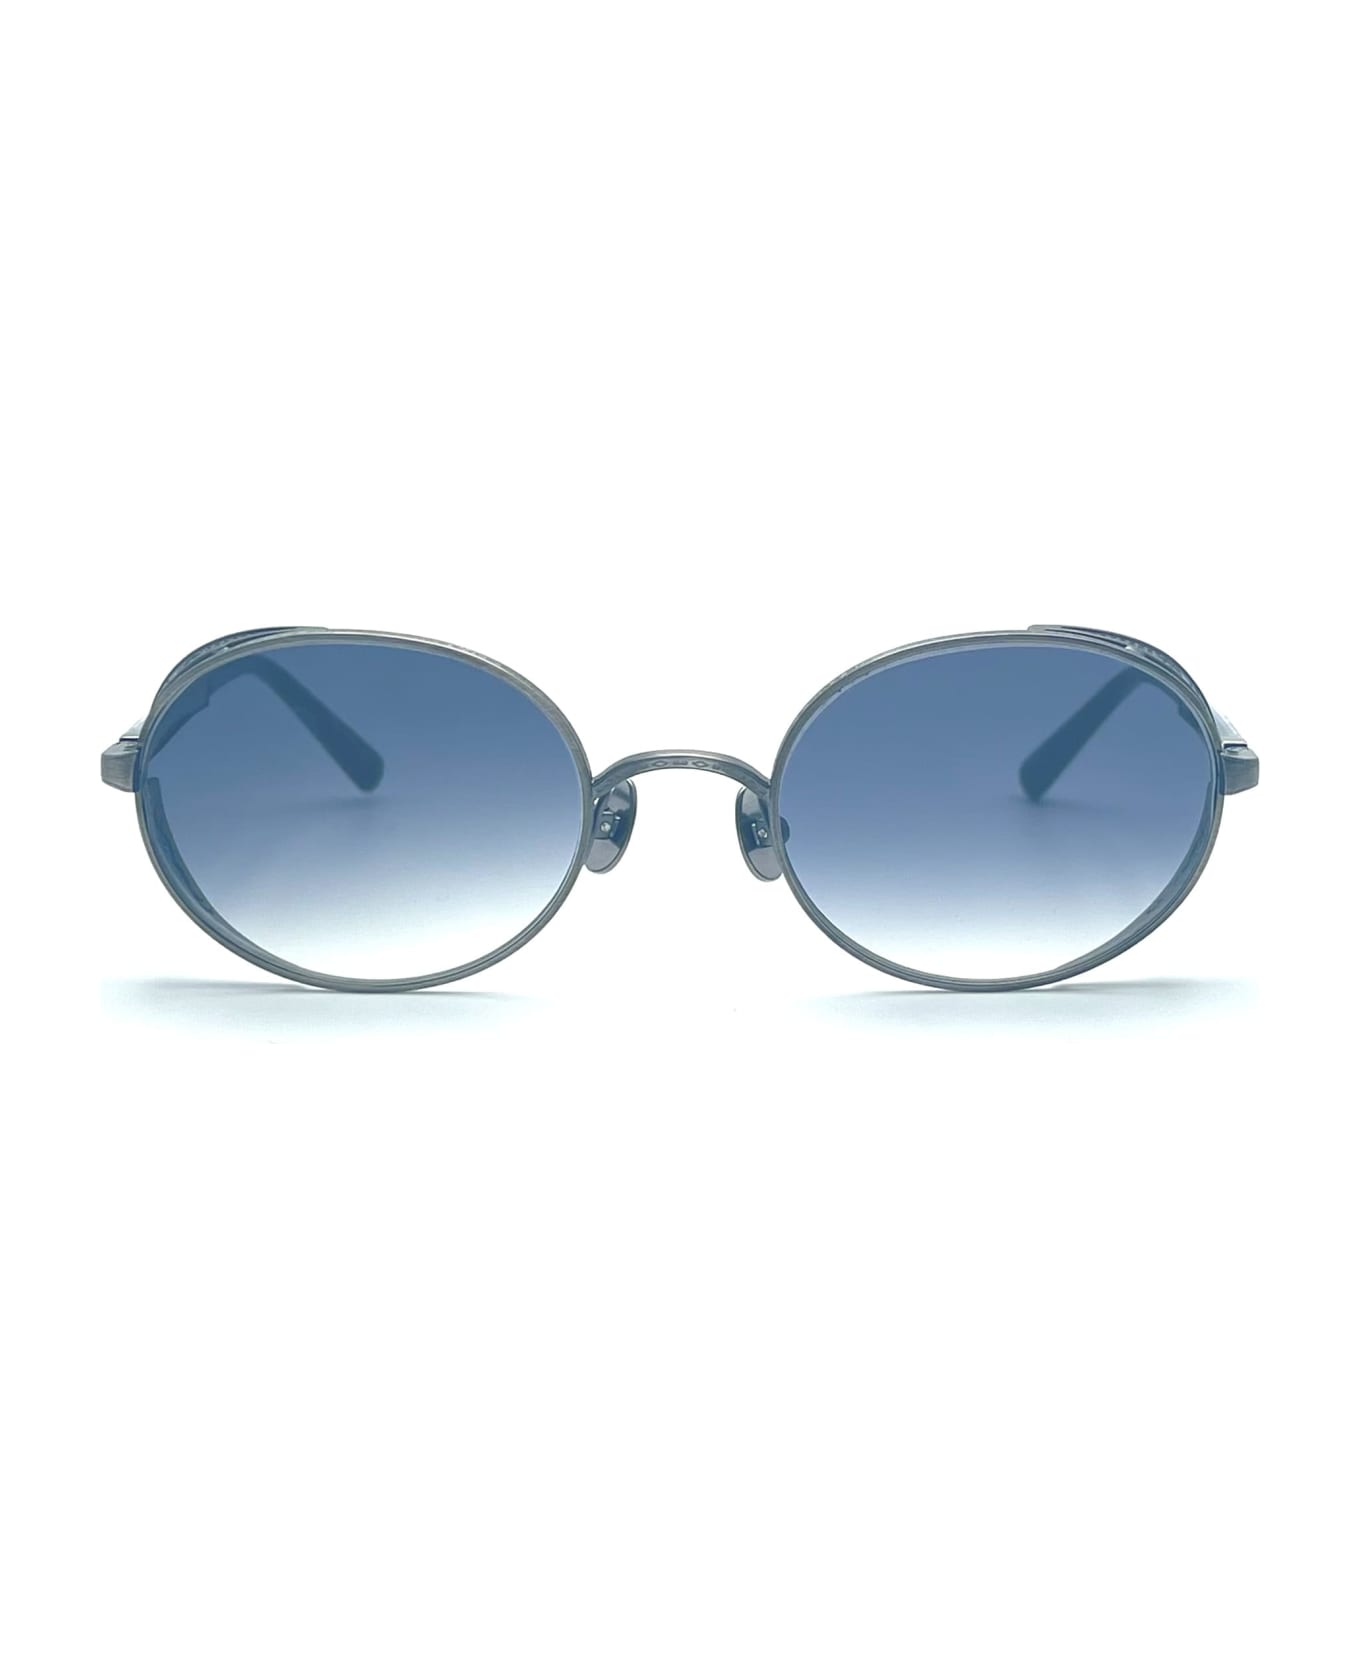 Matsuda M3137 - Antique Silver Sunglasses - Silver サングラス